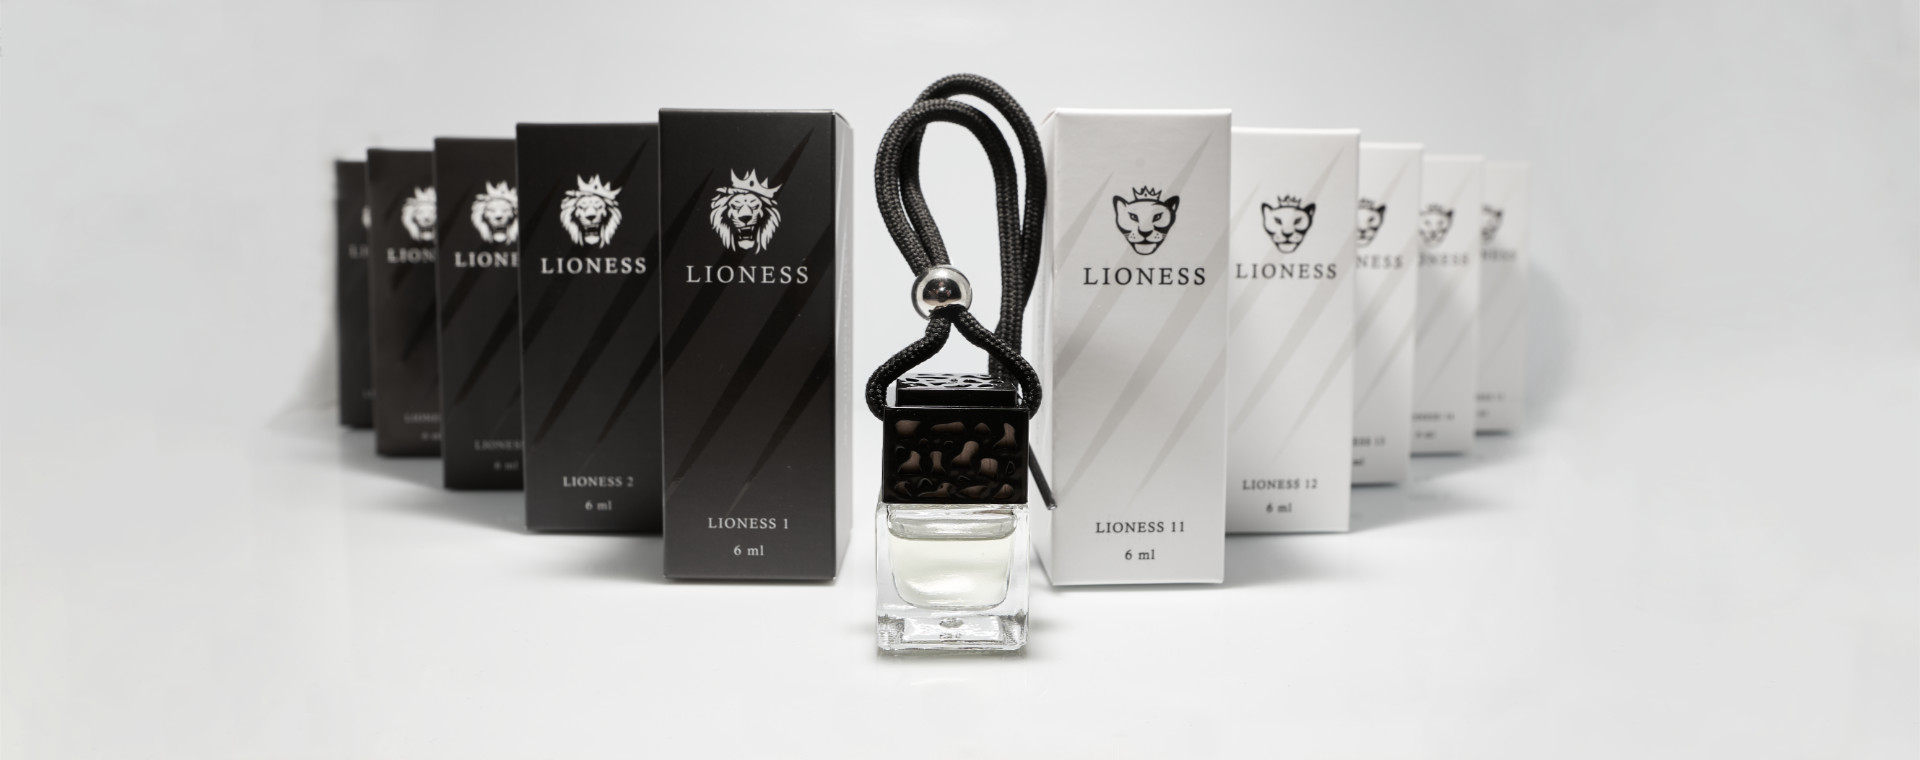 Novinka Lioness autoparfémy světových výrobců parfémů